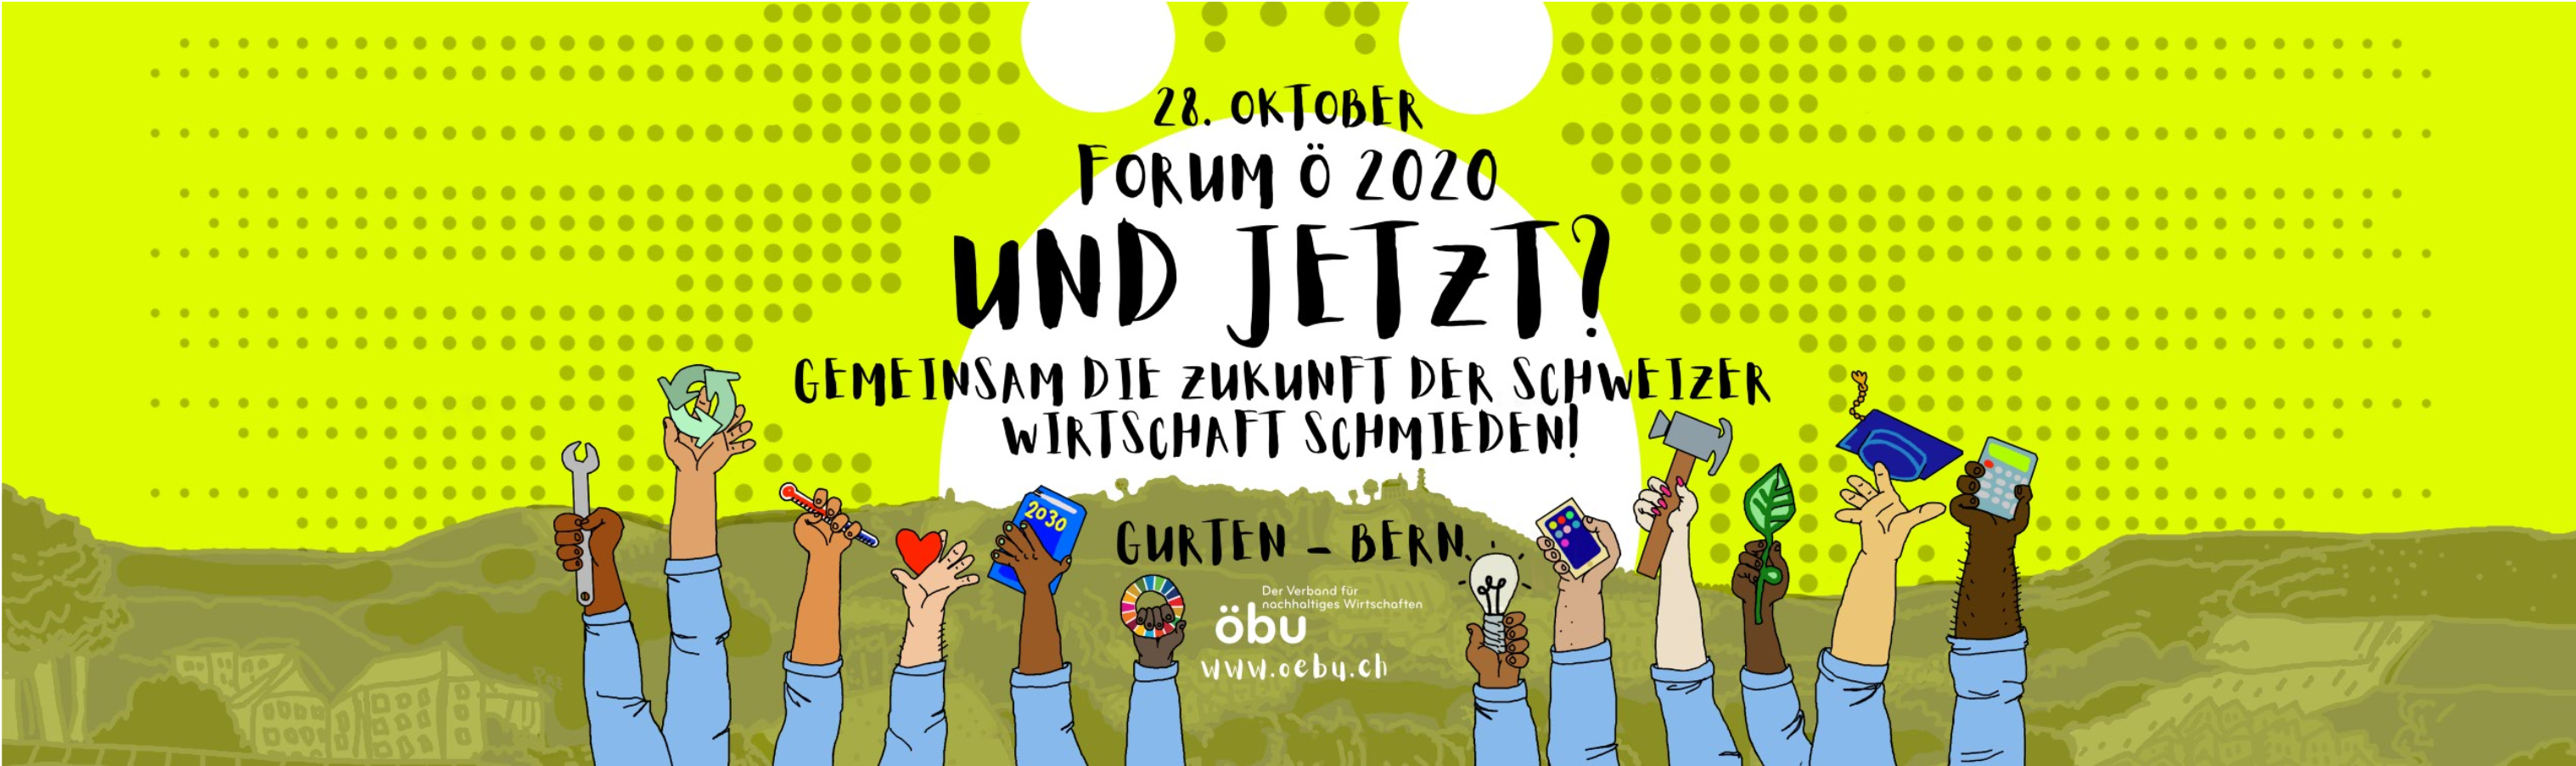 Forum ö 2020: Und jetzt? Gemeinsam die Zukunft der Schweizer Wirtschaft schmieden!